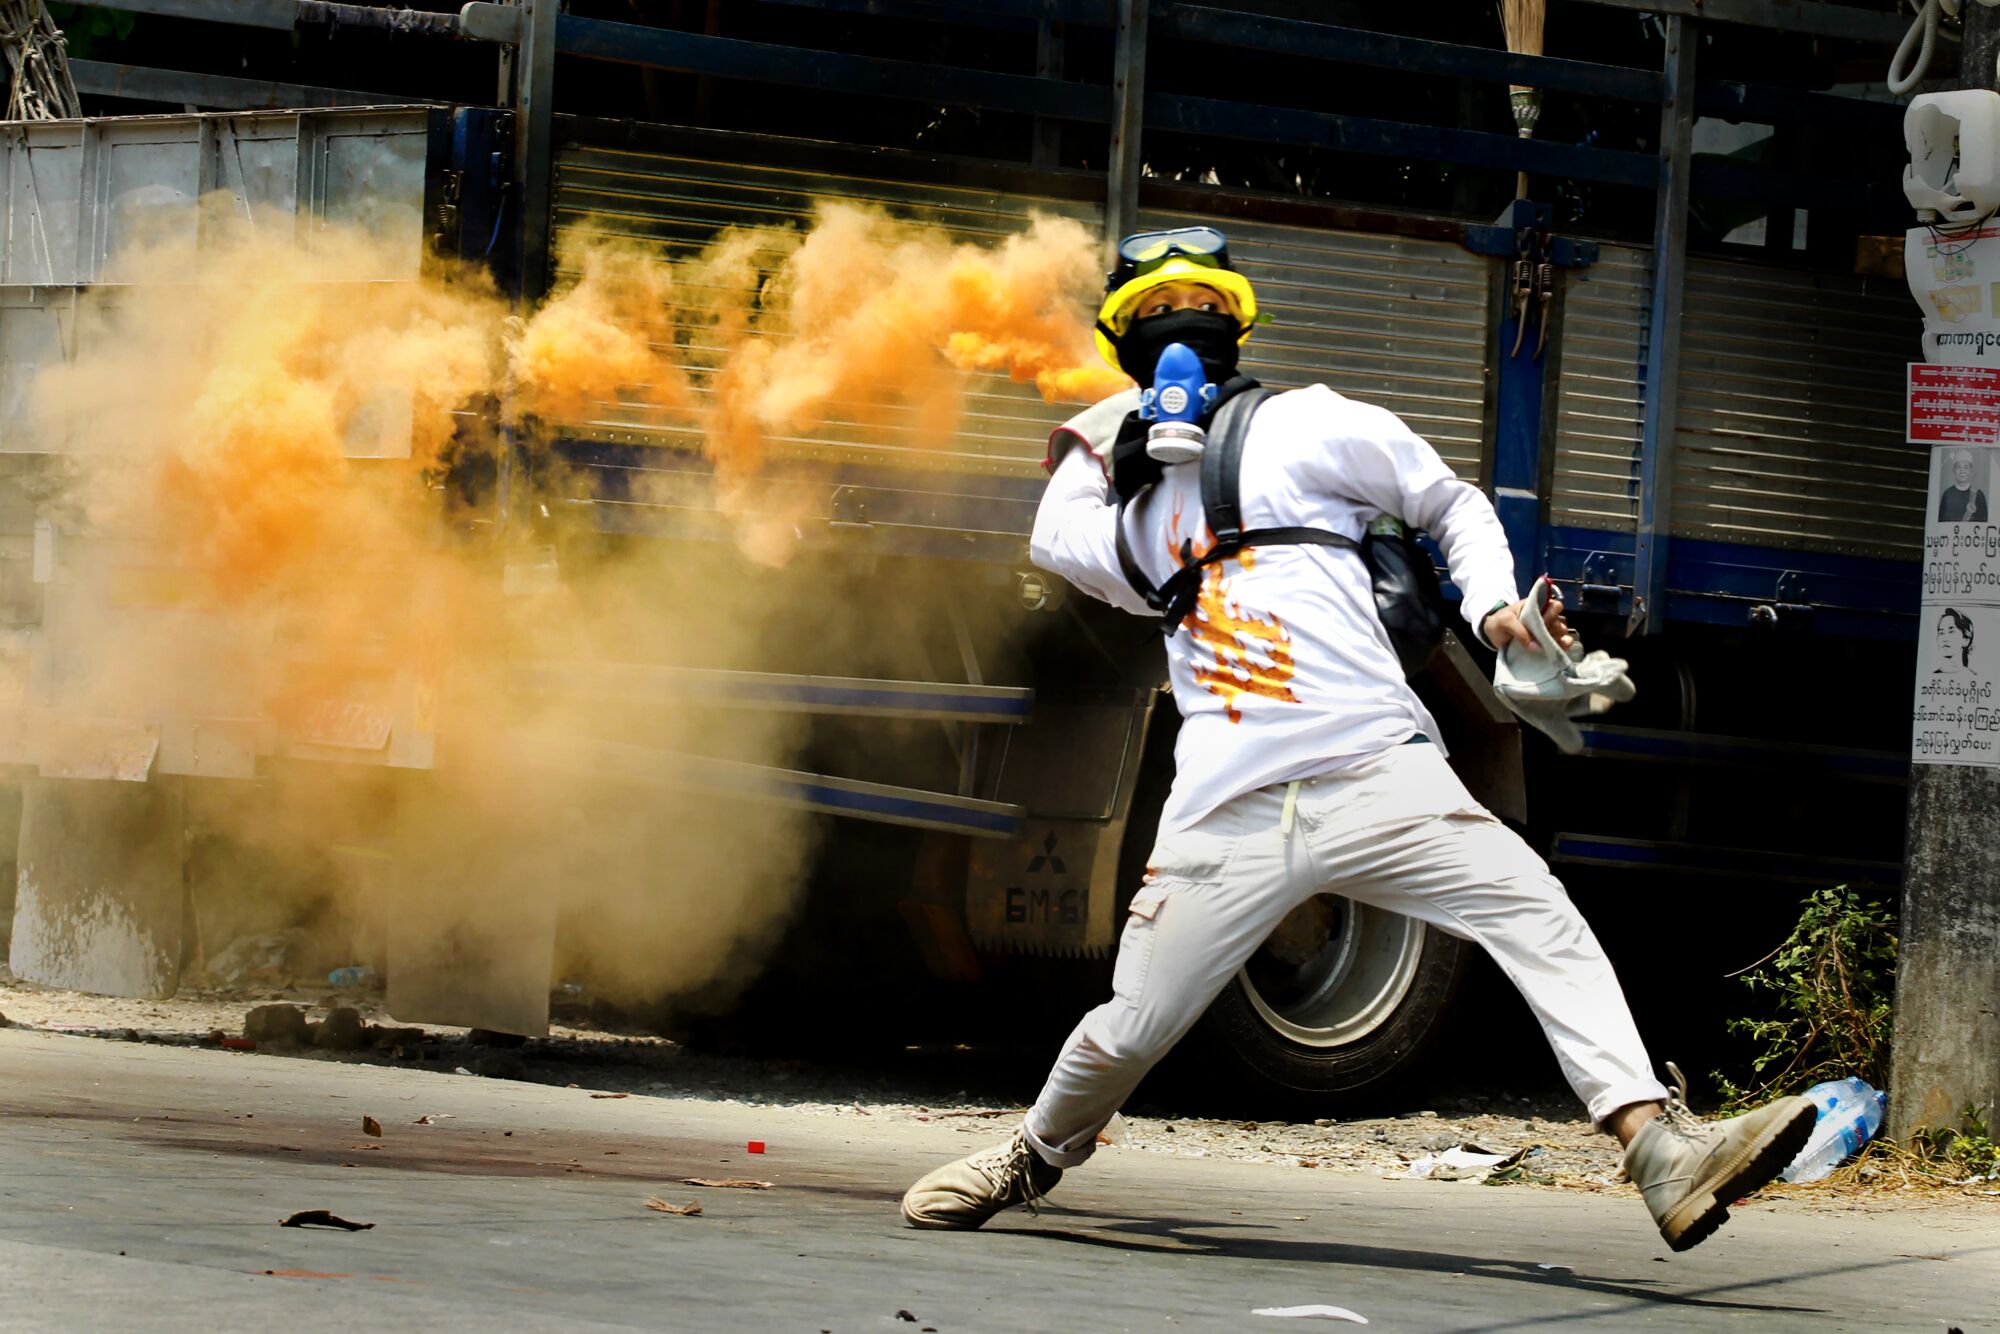 A protester throws a smoke bomb.